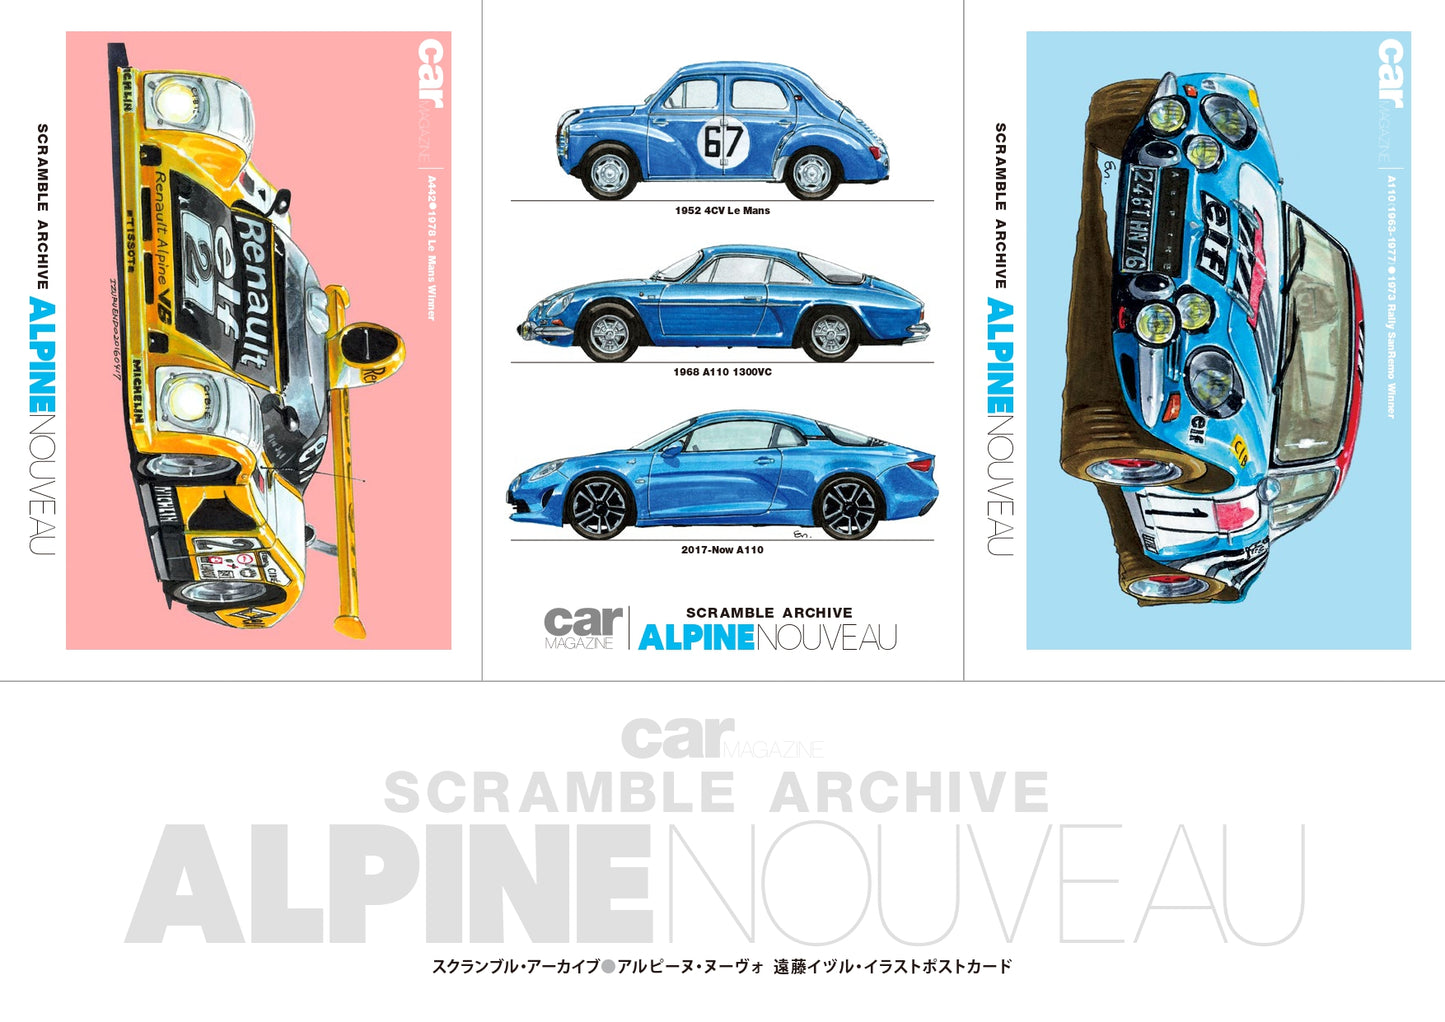 [Limited benefit: Postcard included] Scramble Archive Alpine Nouveau